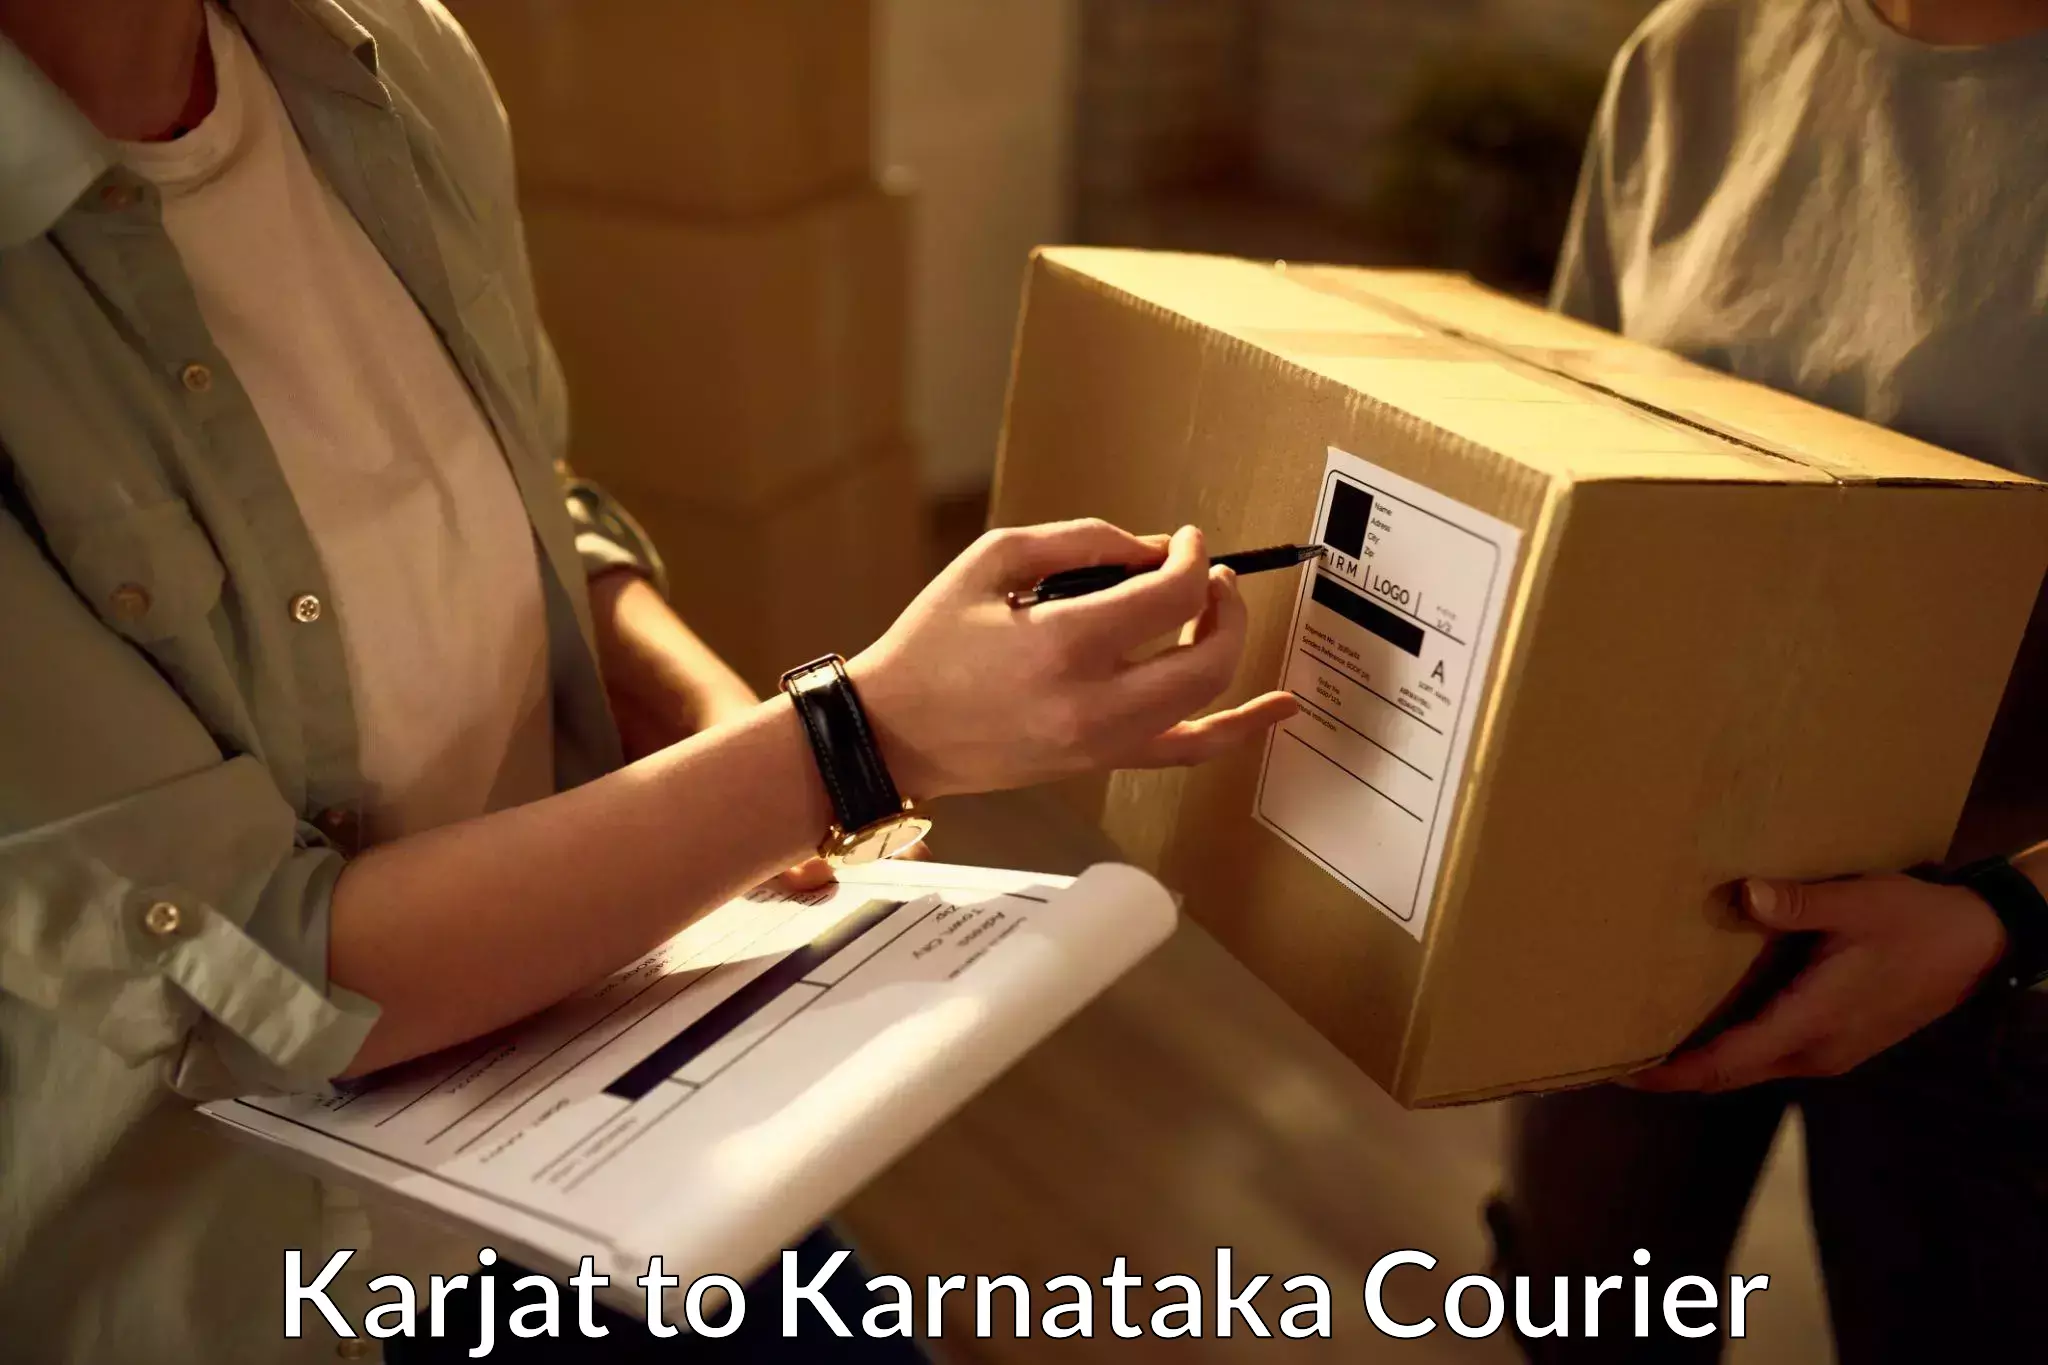 Rapid shipping services Karjat to Karnataka